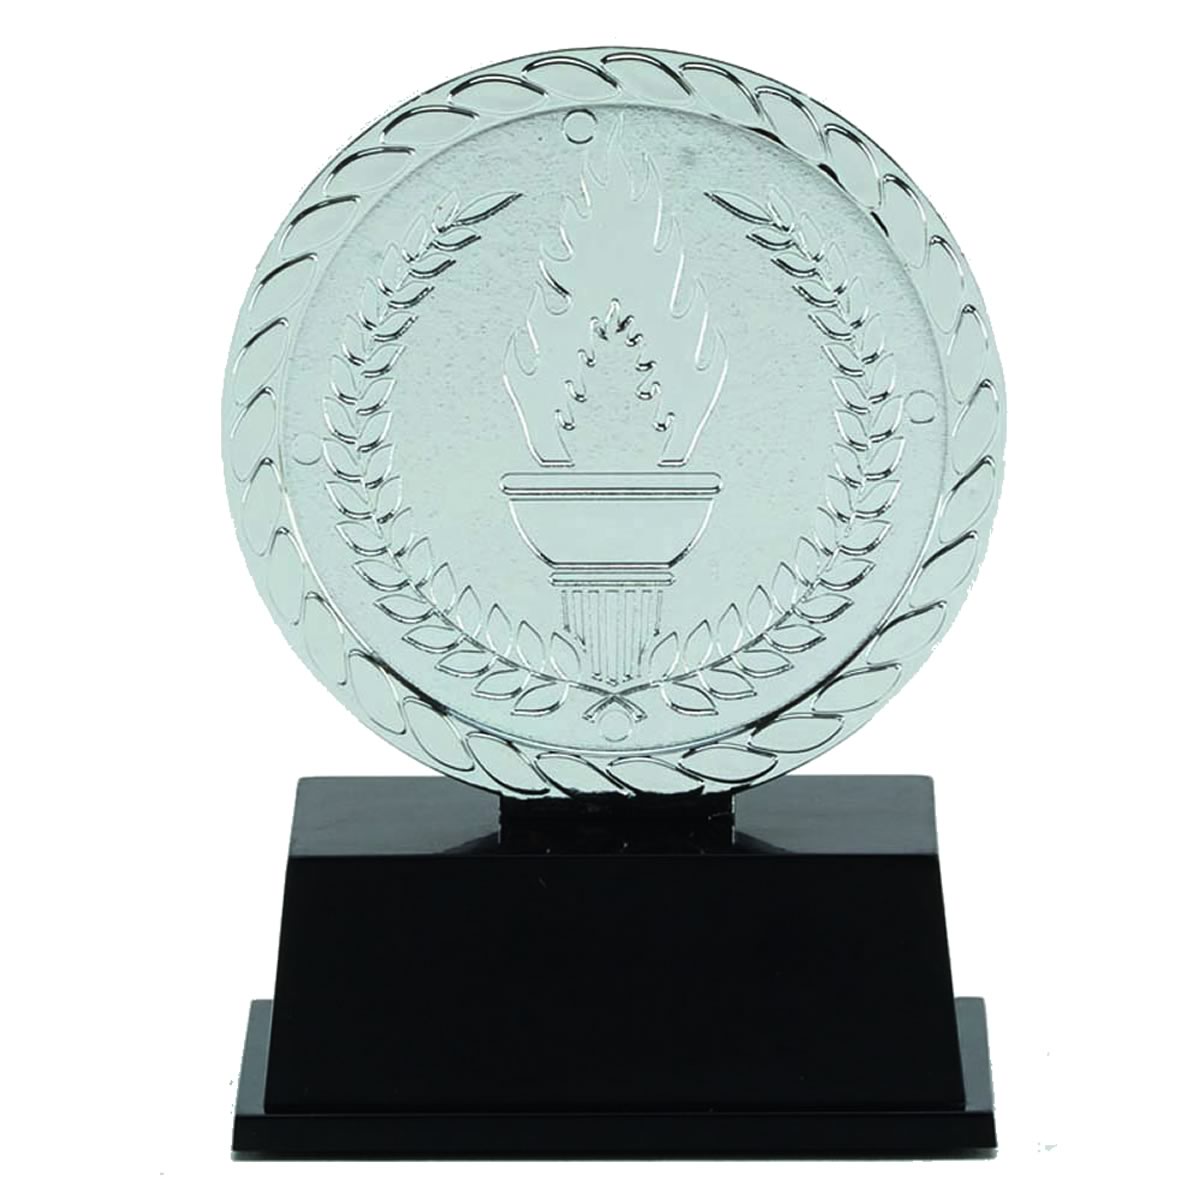 Vibe Super Mini Award - Gold, Silver & Bronze